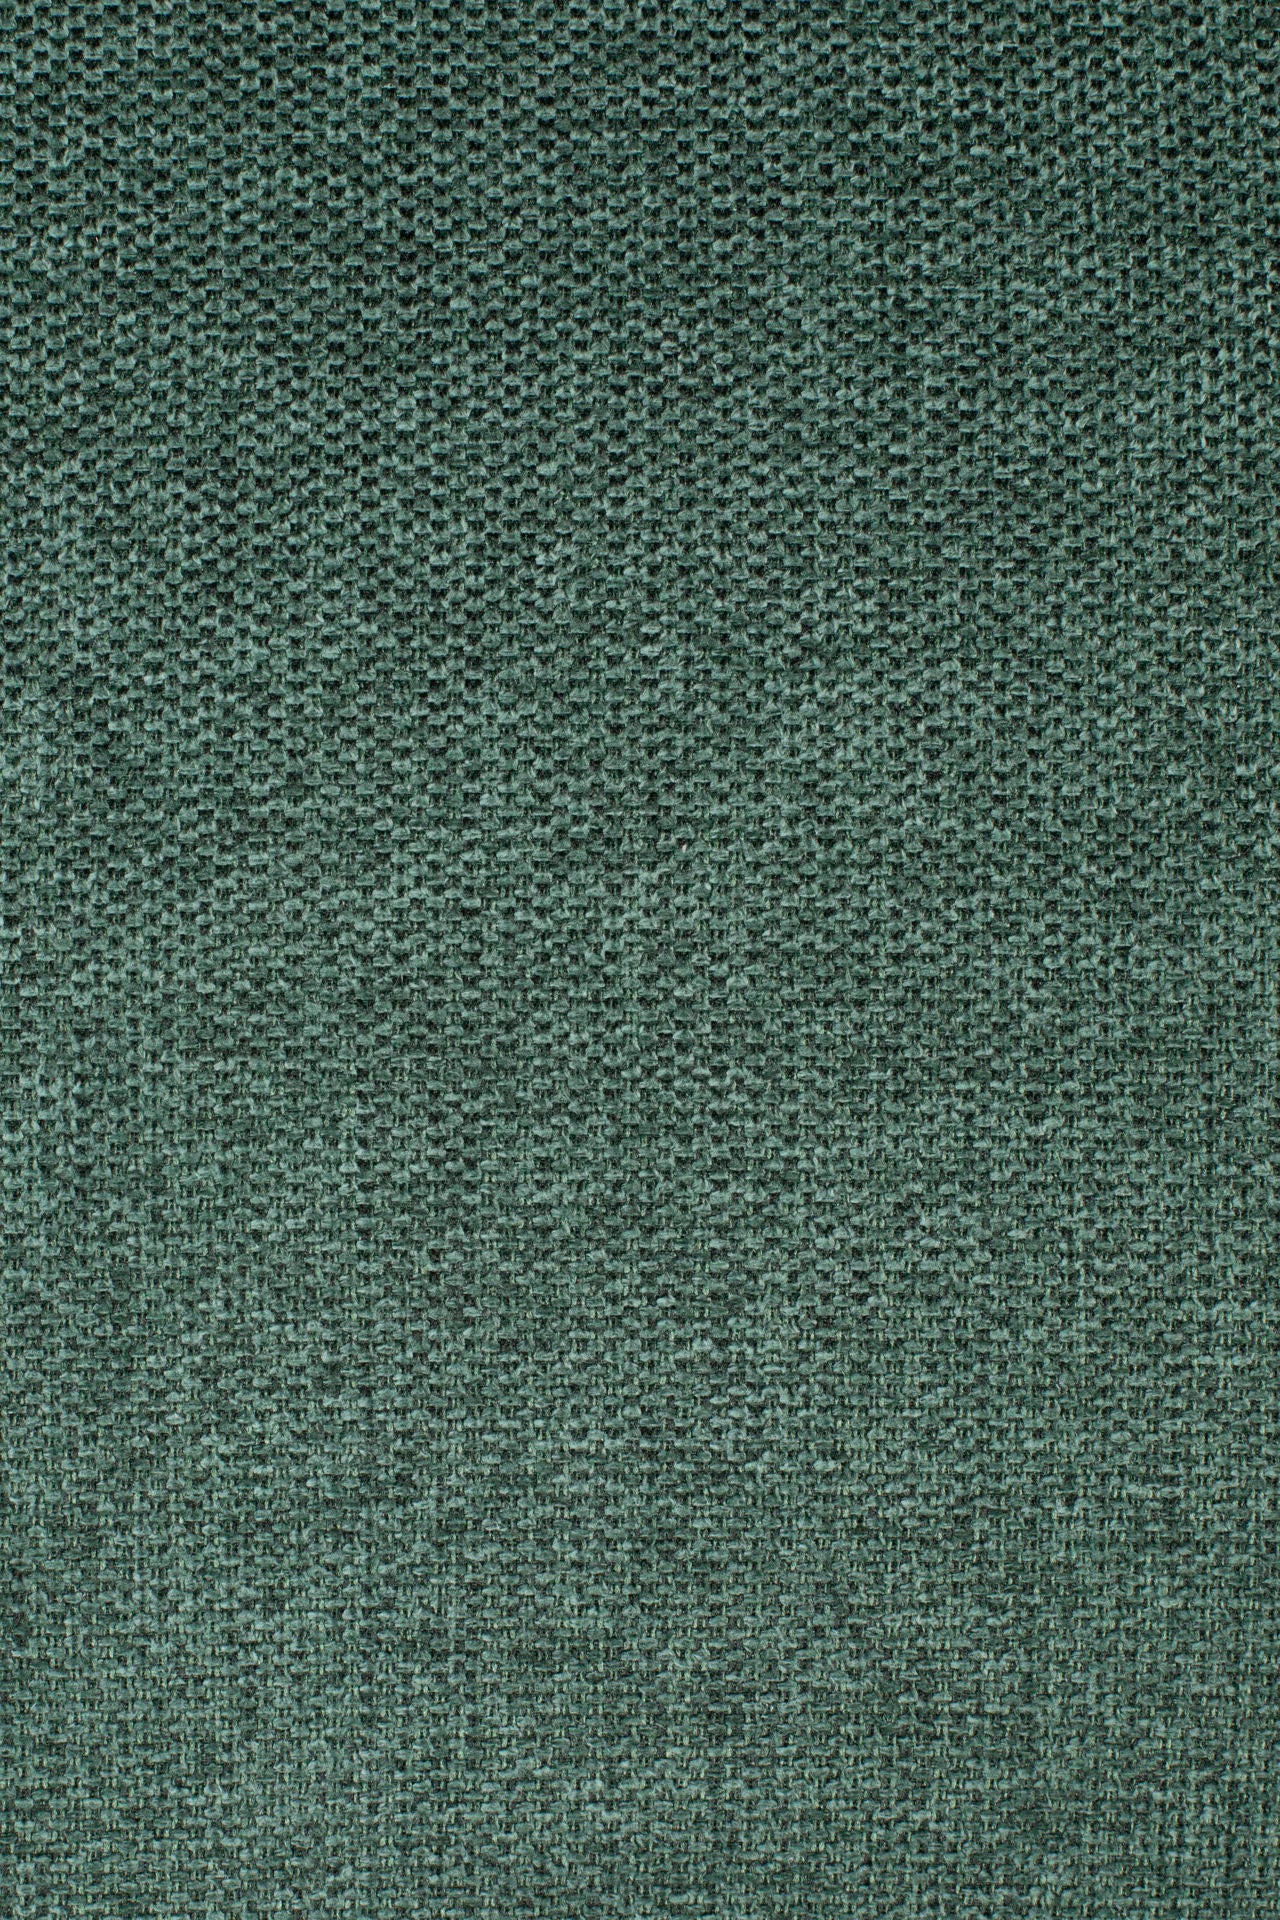 Nancy's Temperance Kruk - Modern - Donkergroen, Zwart - Polyester, Staal, Pu - 46 cm x 51,5 cm x 105 cm